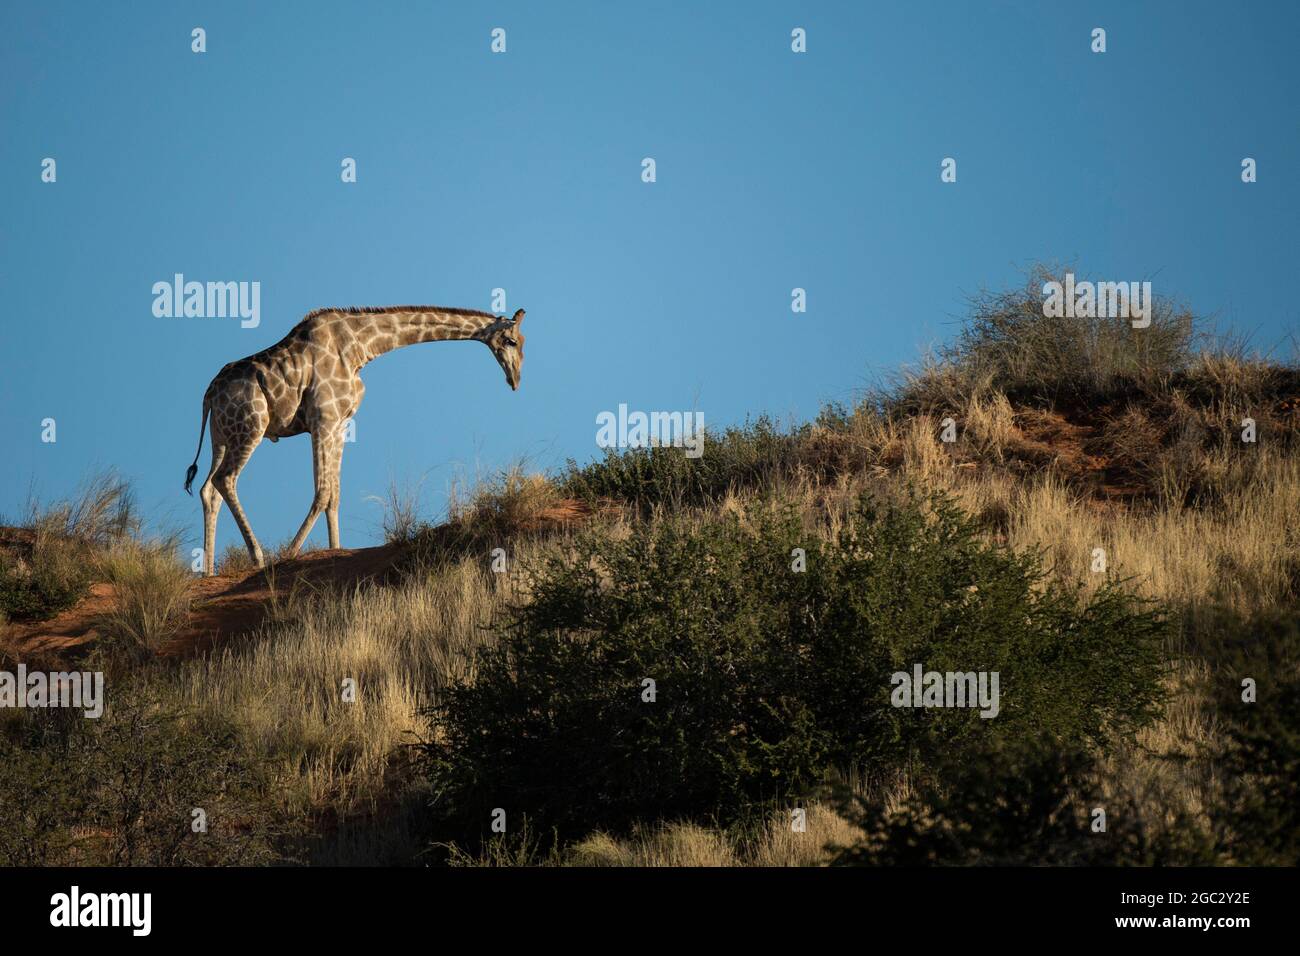 Southern giraffe, Giraffa camelopardalis giraffa, Kgalagadi Transfrontier Park, South Africa Stock Photo